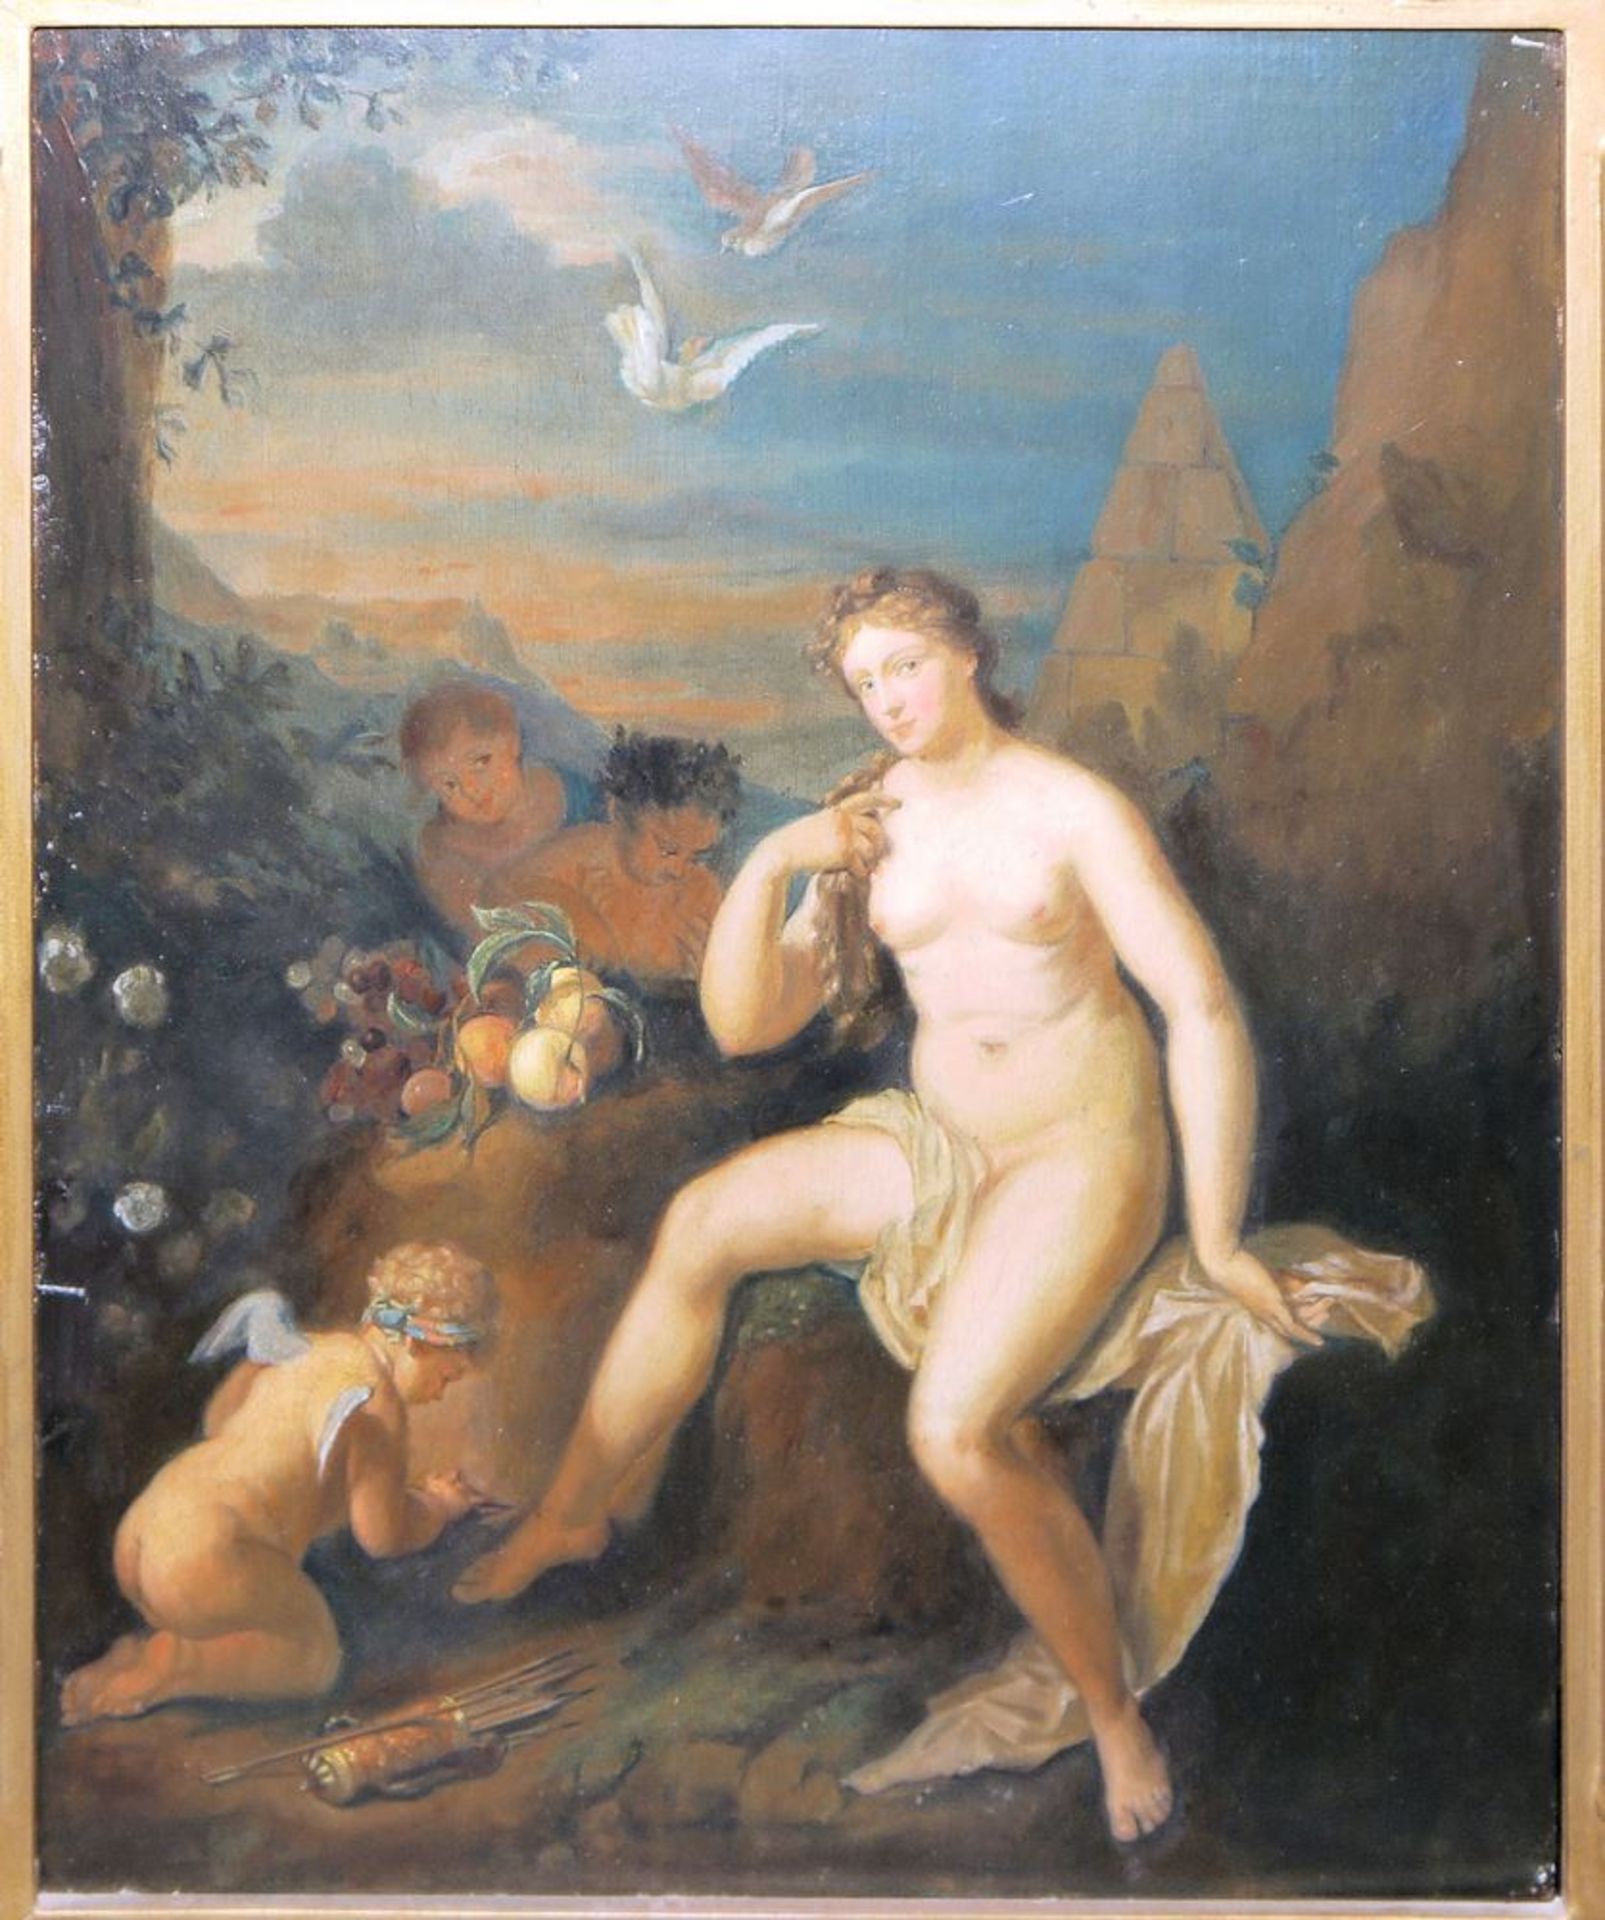 Adriaen van der Werff, meisterliche Kopie nach, Venus und Amor, Ölgemälde, 19. Jh., in altem - Bild 2 aus 2